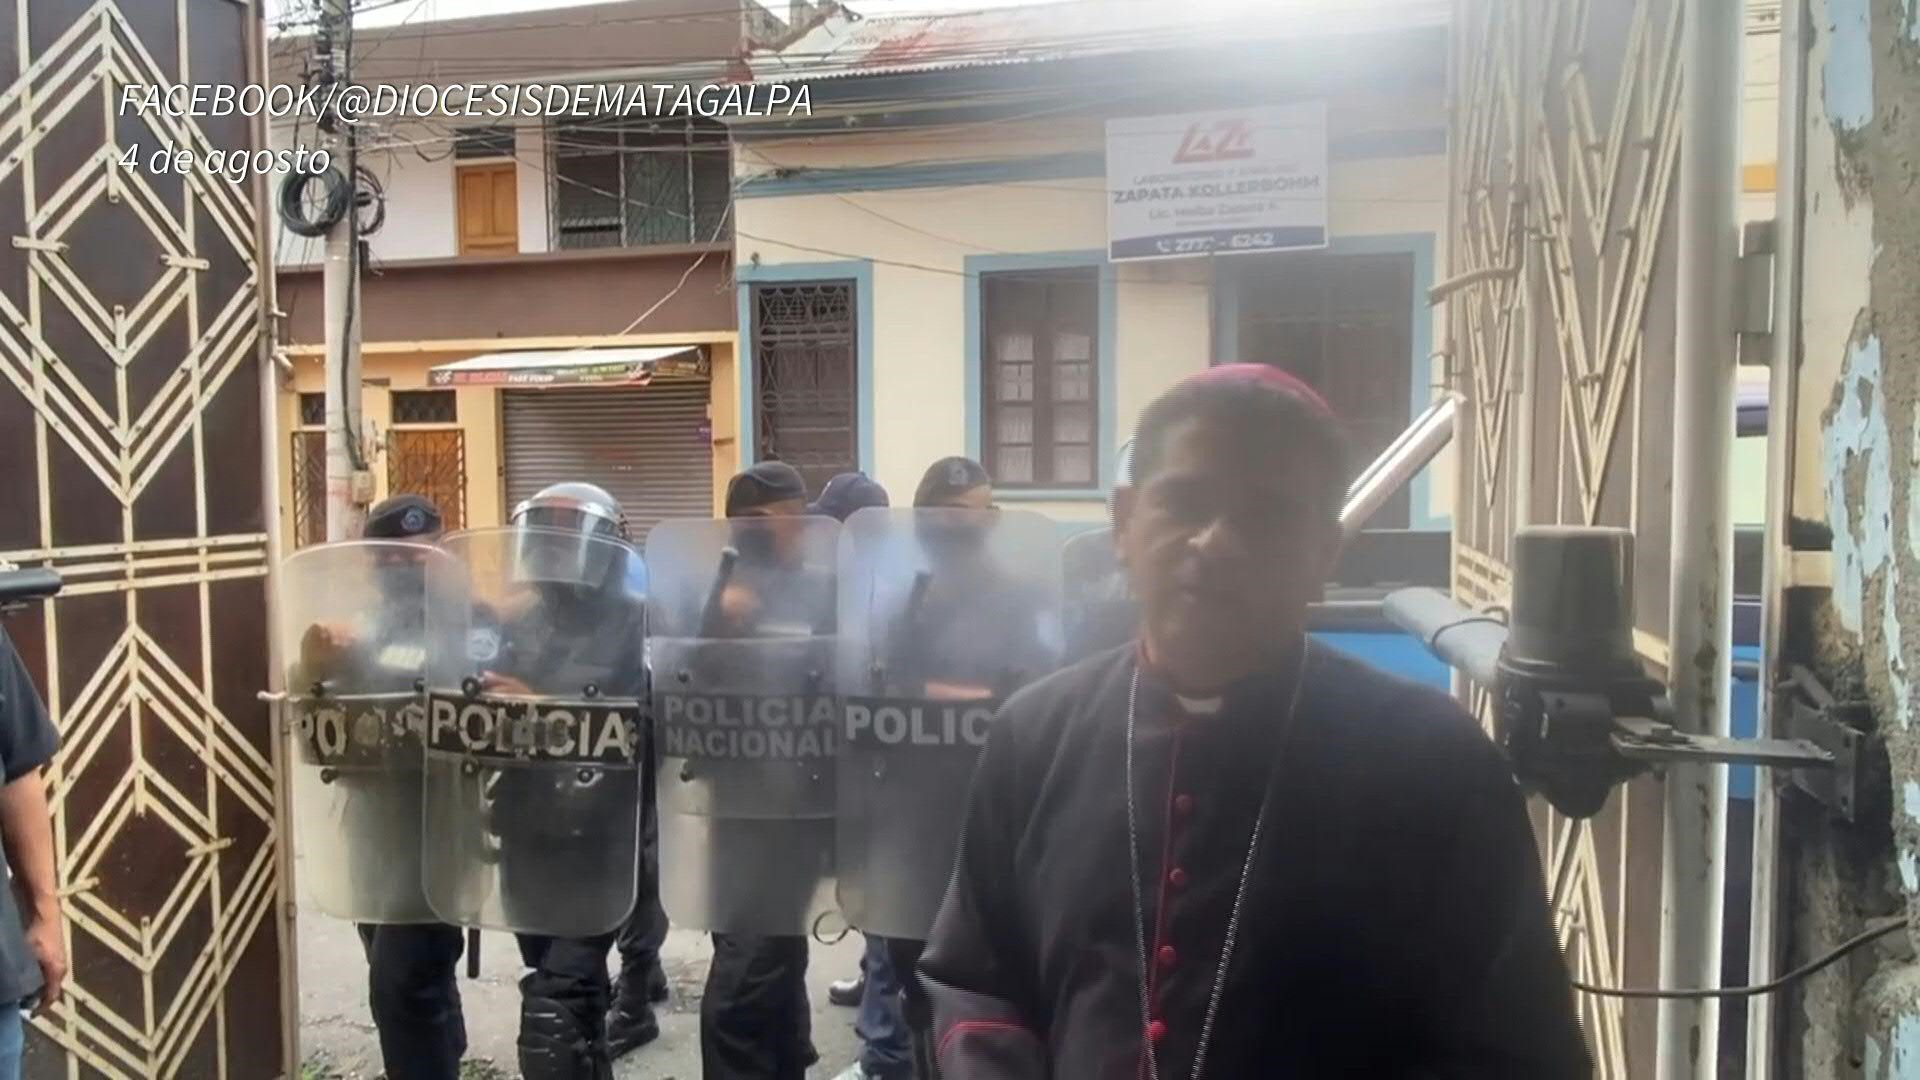 La emisora clausurada es Radio Stereo Fe, propiedad de la diócesis de Estelí, cuyo administrador apostólico es el obispo Rolando Álvarez, arrestado el viernes pasado por la Policía Nacional (AFP/Archivo)